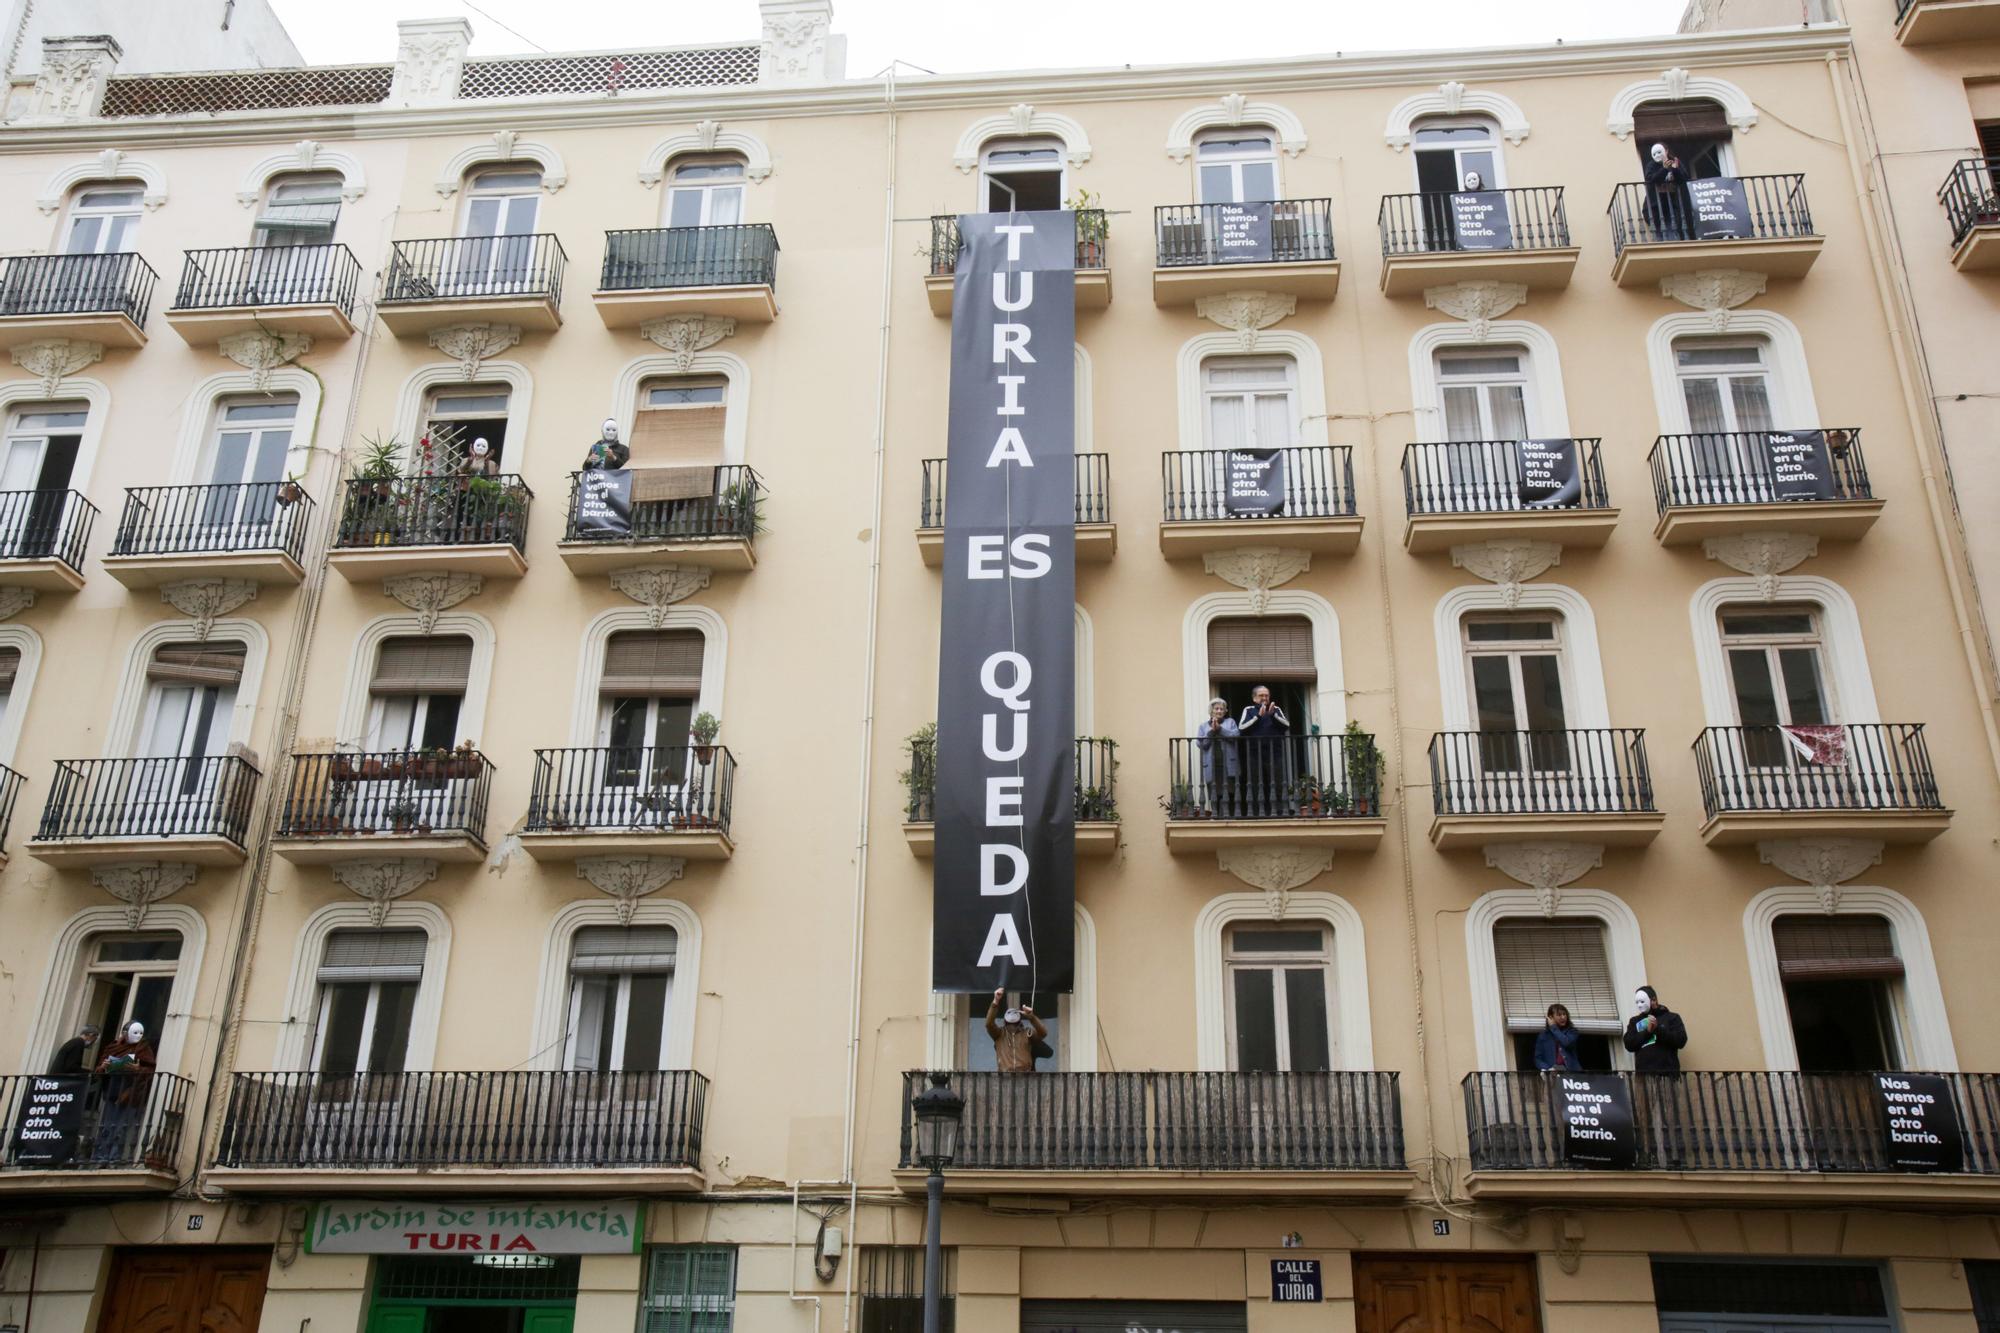 Protesta en la calle Turia ante el desahucio de 16 familias para construir apartamentos turísticos